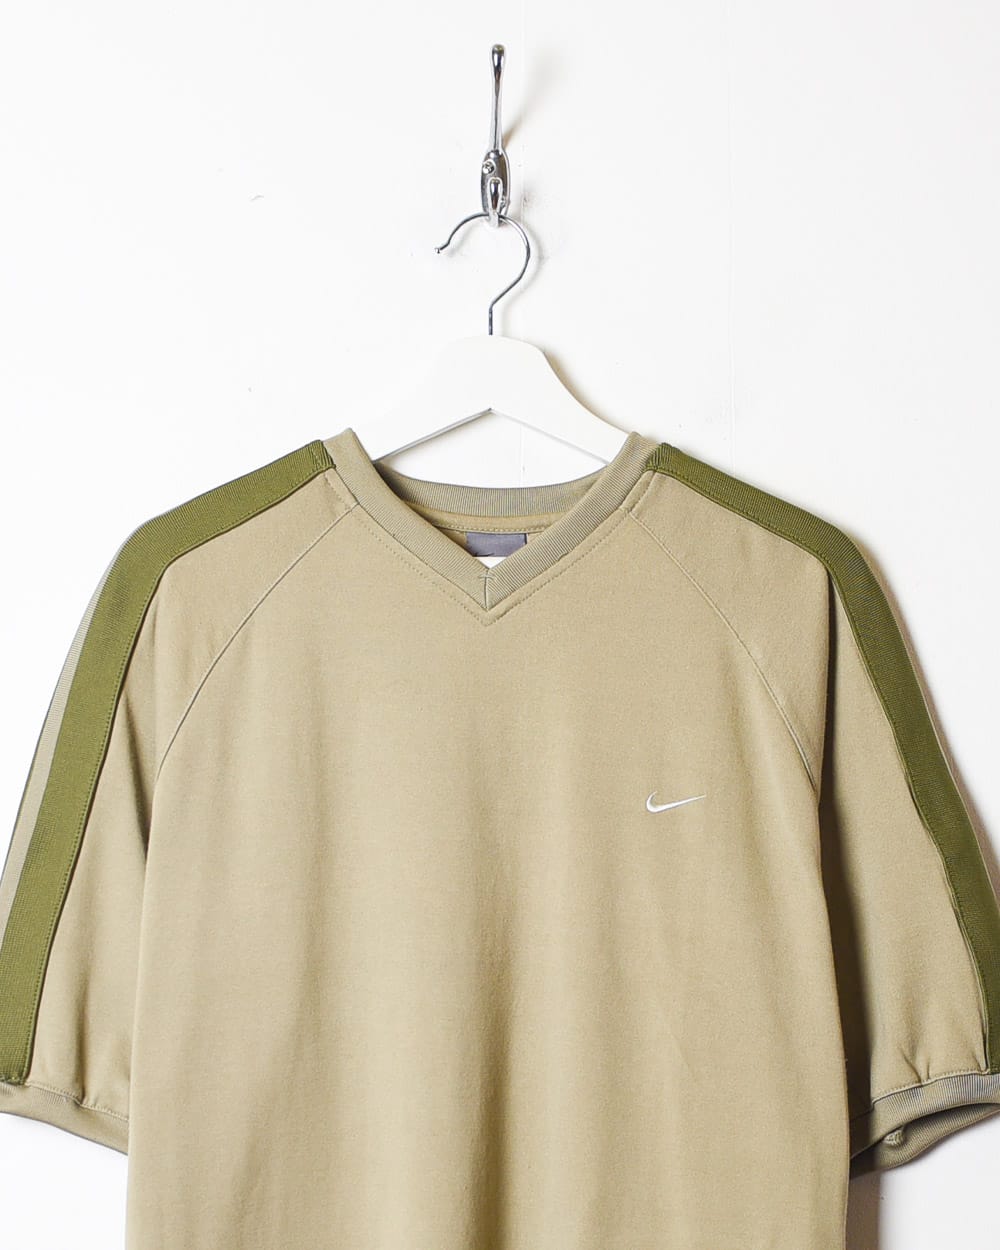 Khaki Nike T-Shirt - X-Large